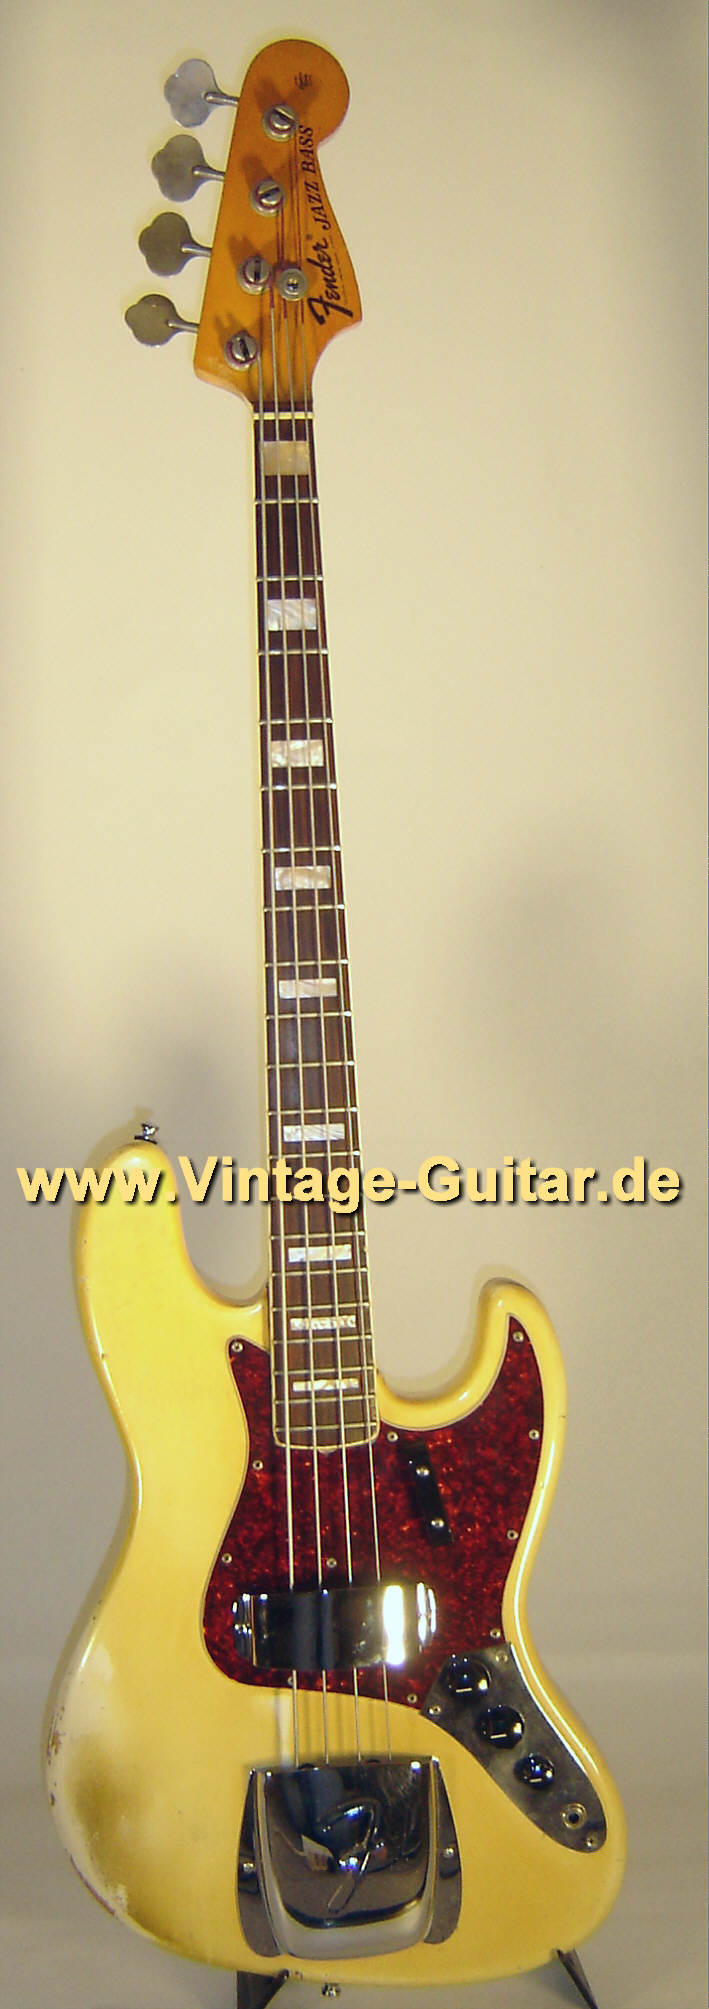 Fender_Jazz-Bass_1973_Olympic-White-1.jpg